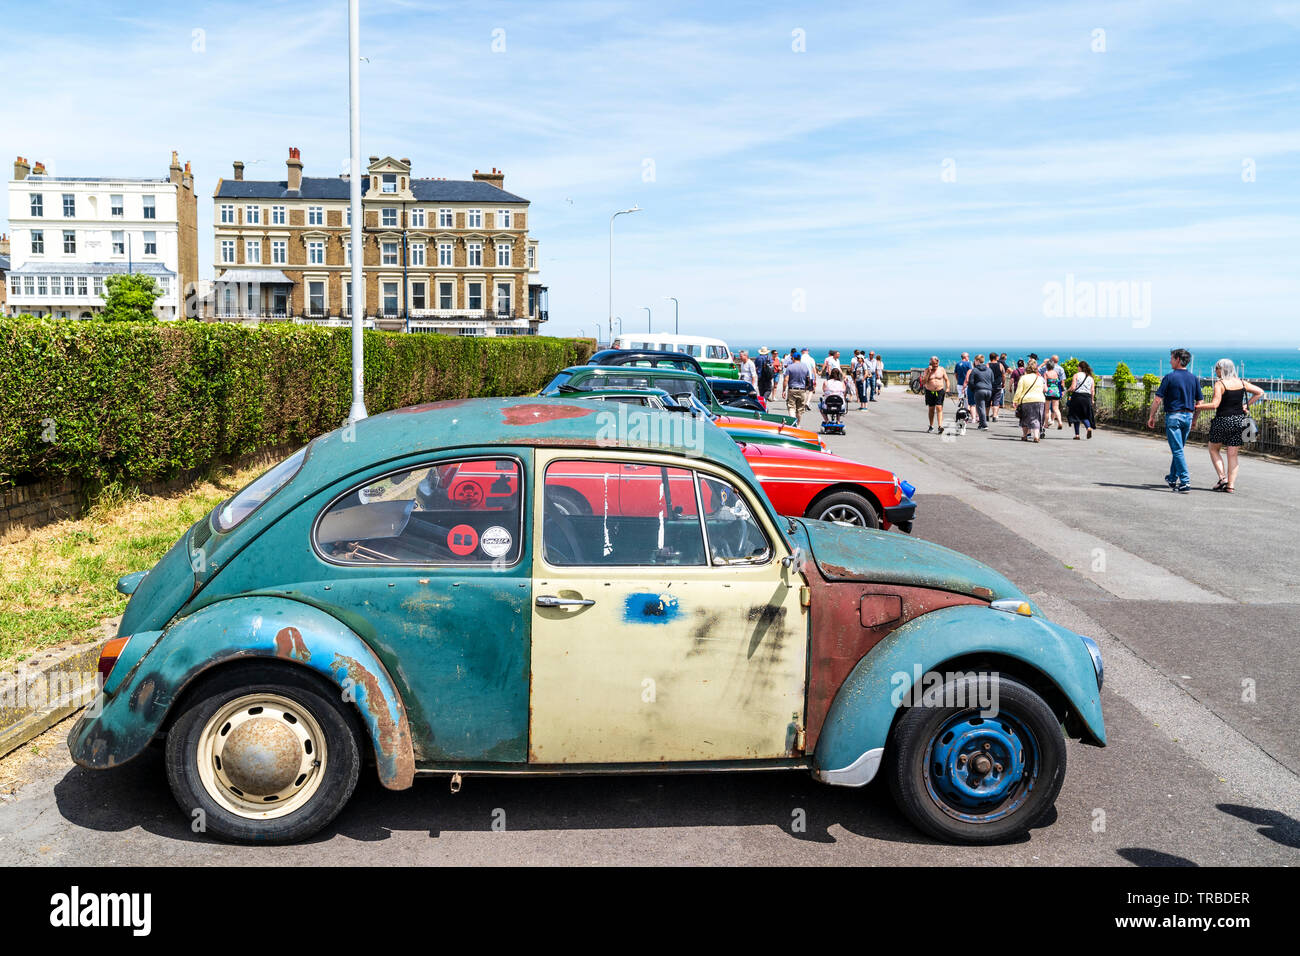 Das 38. Jahr der jährliche Schaufel und Spaten Classic Car Run von Canterbury nach Ramsgate Strandpromenade. Klassische Autos, alte und moderne, in einer Reihe geparkt entlang der Klippe direkt am Meer promanede. Menschen zu Fuß aroound Anzeigen des Autos. Stockfoto